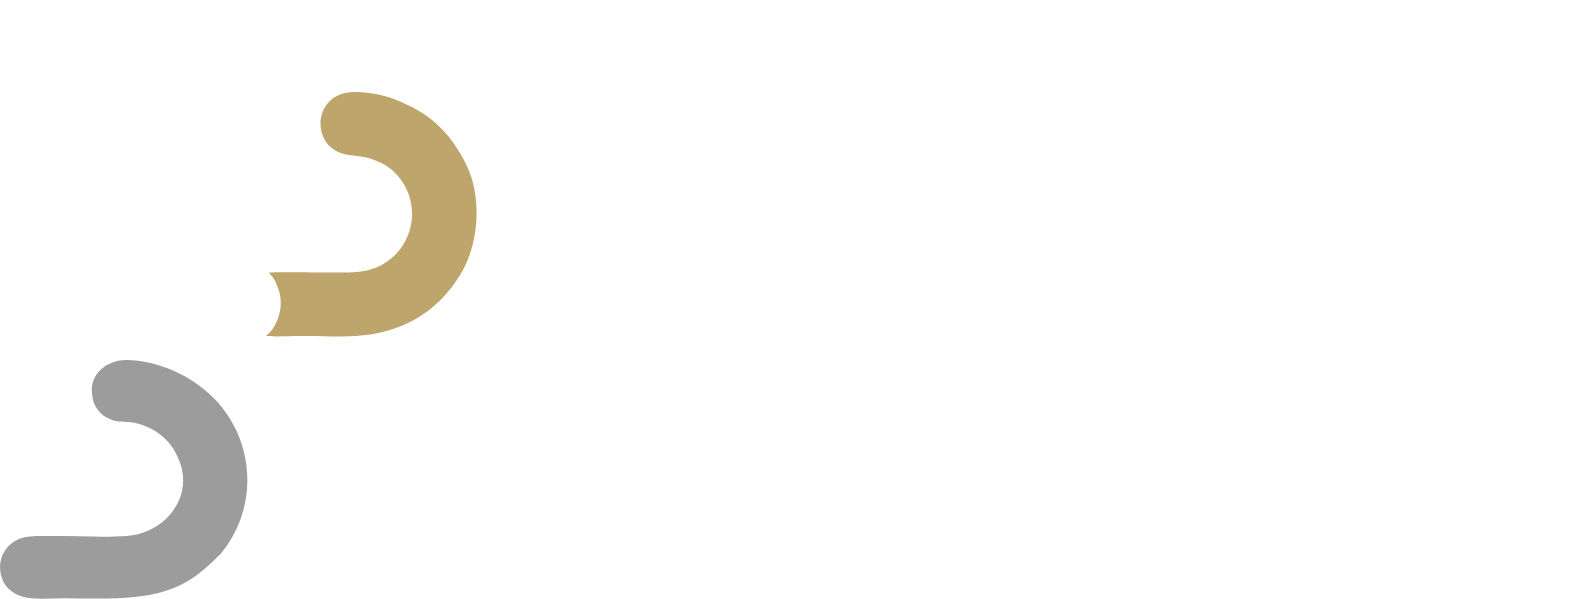 Sibanye-Stillwater
 logo large for dark backgrounds (transparent PNG)